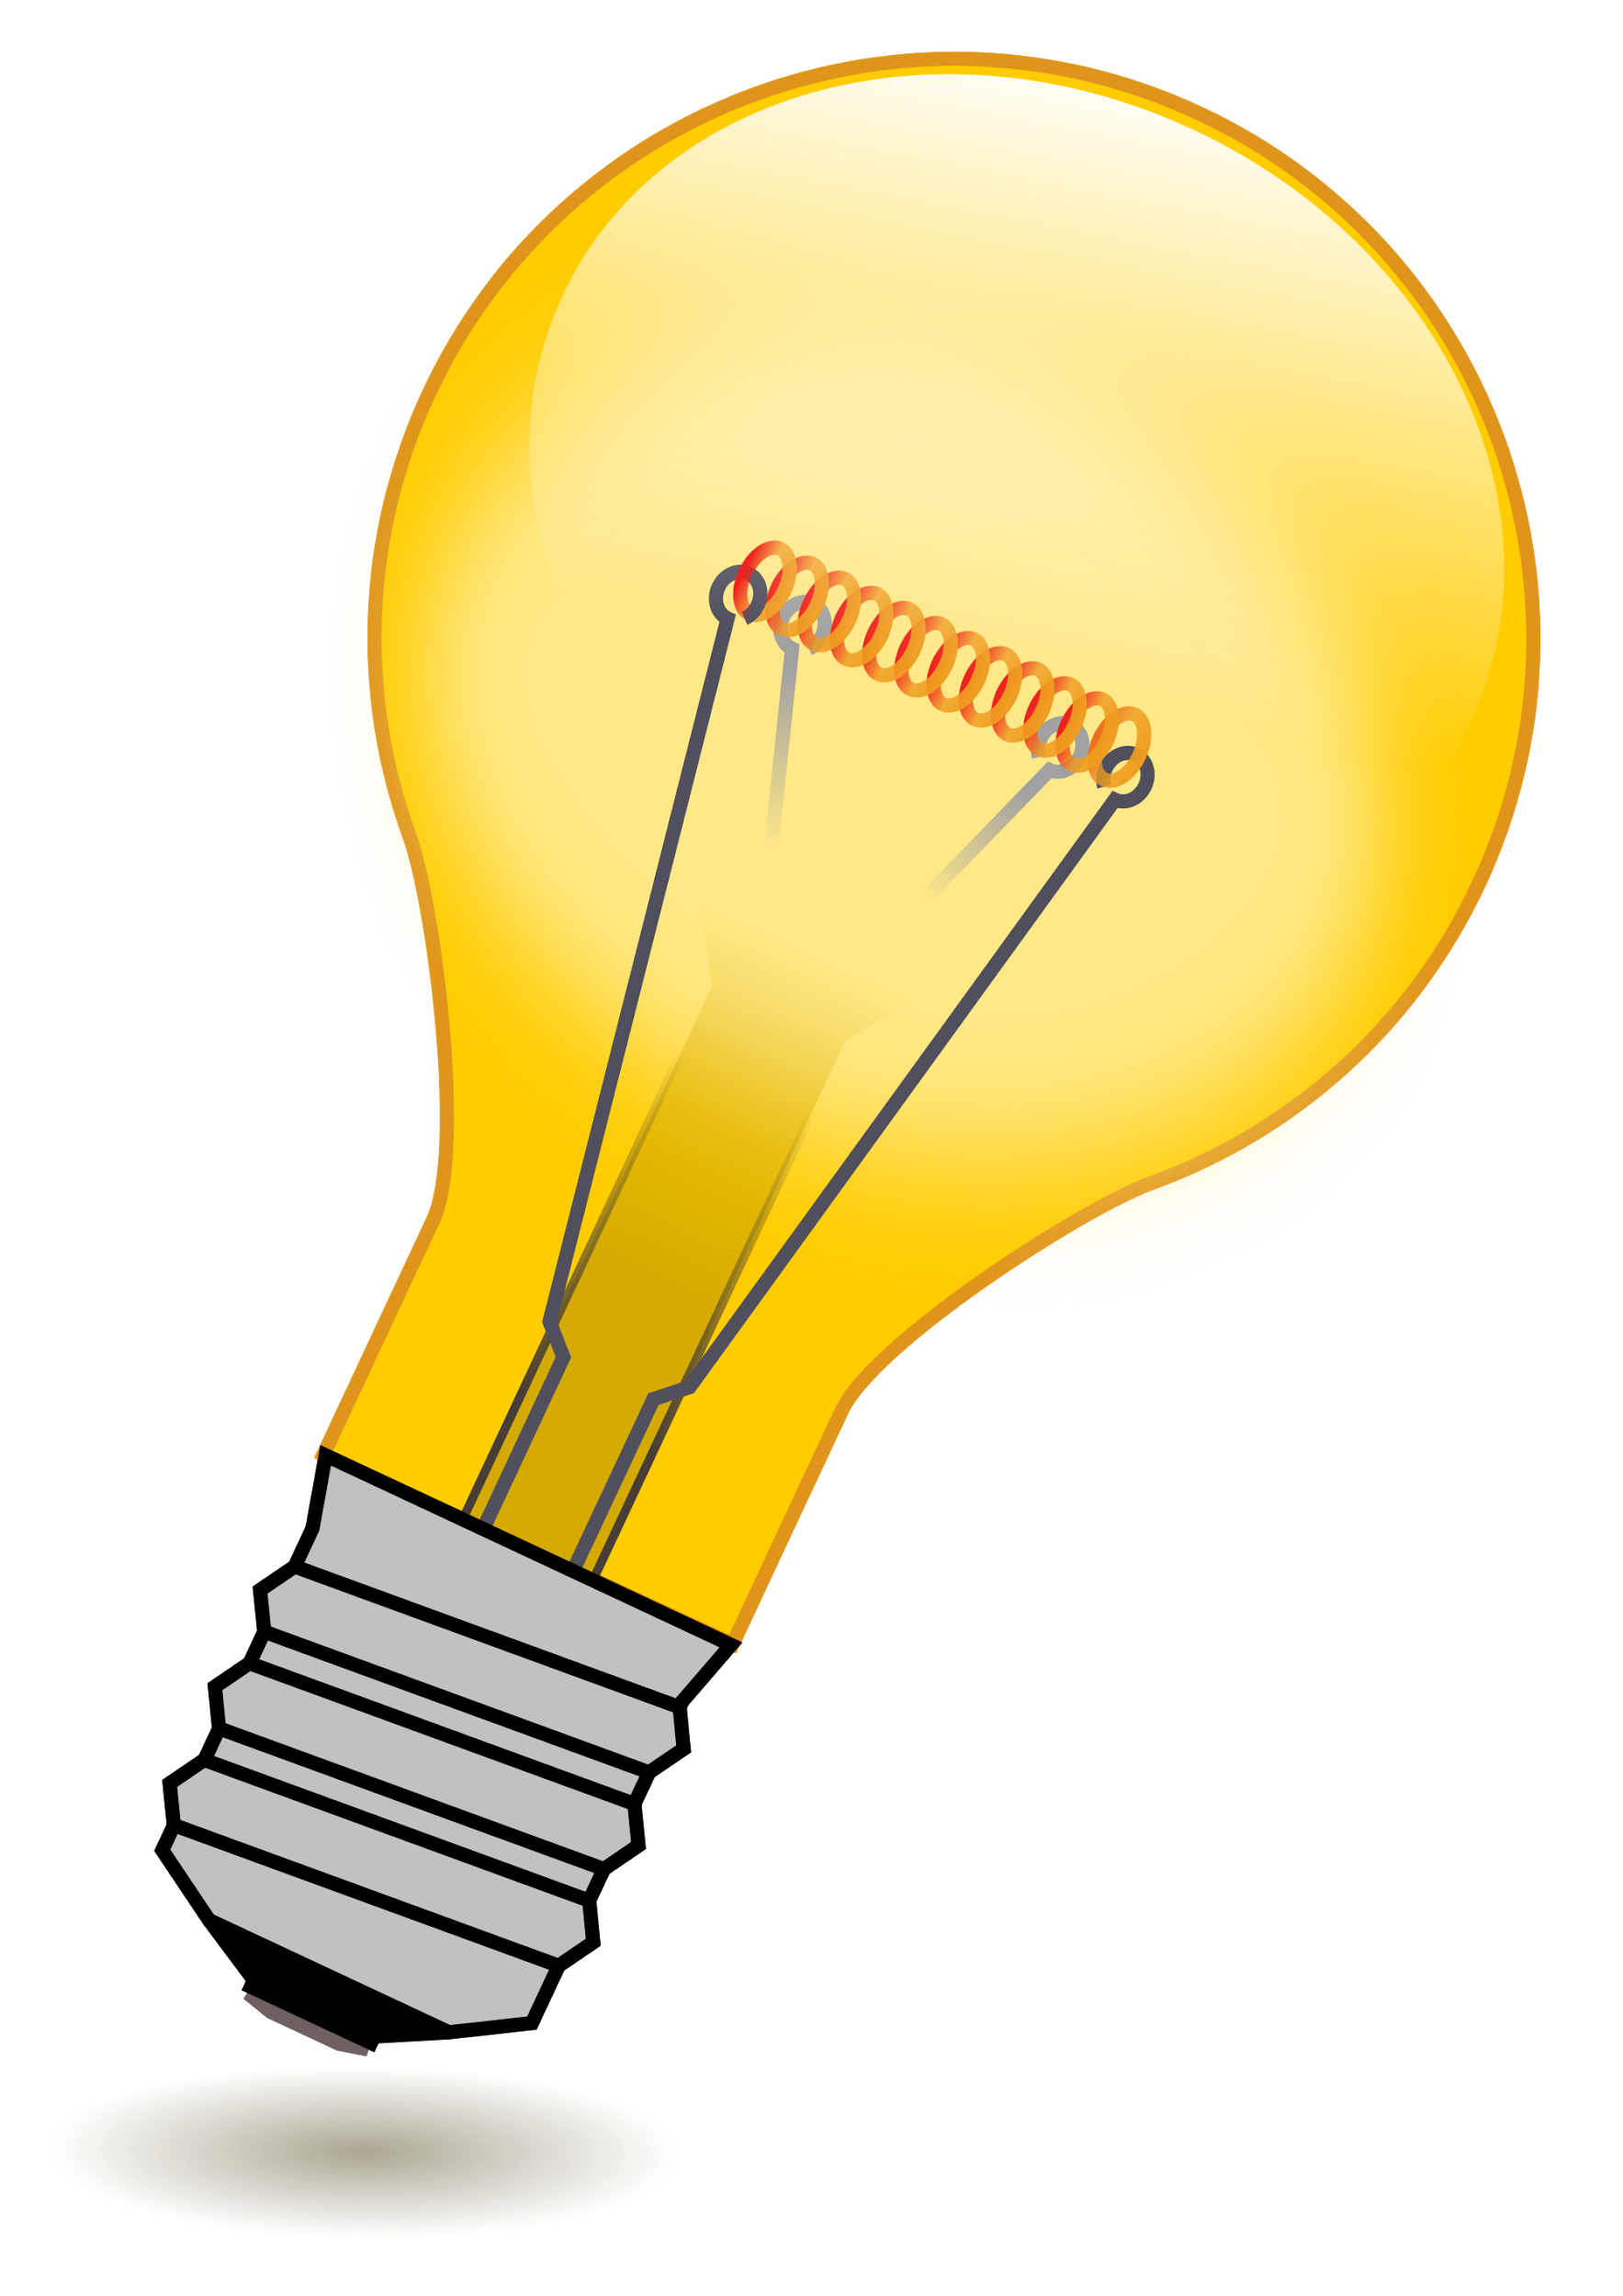 descriptionlight bulb